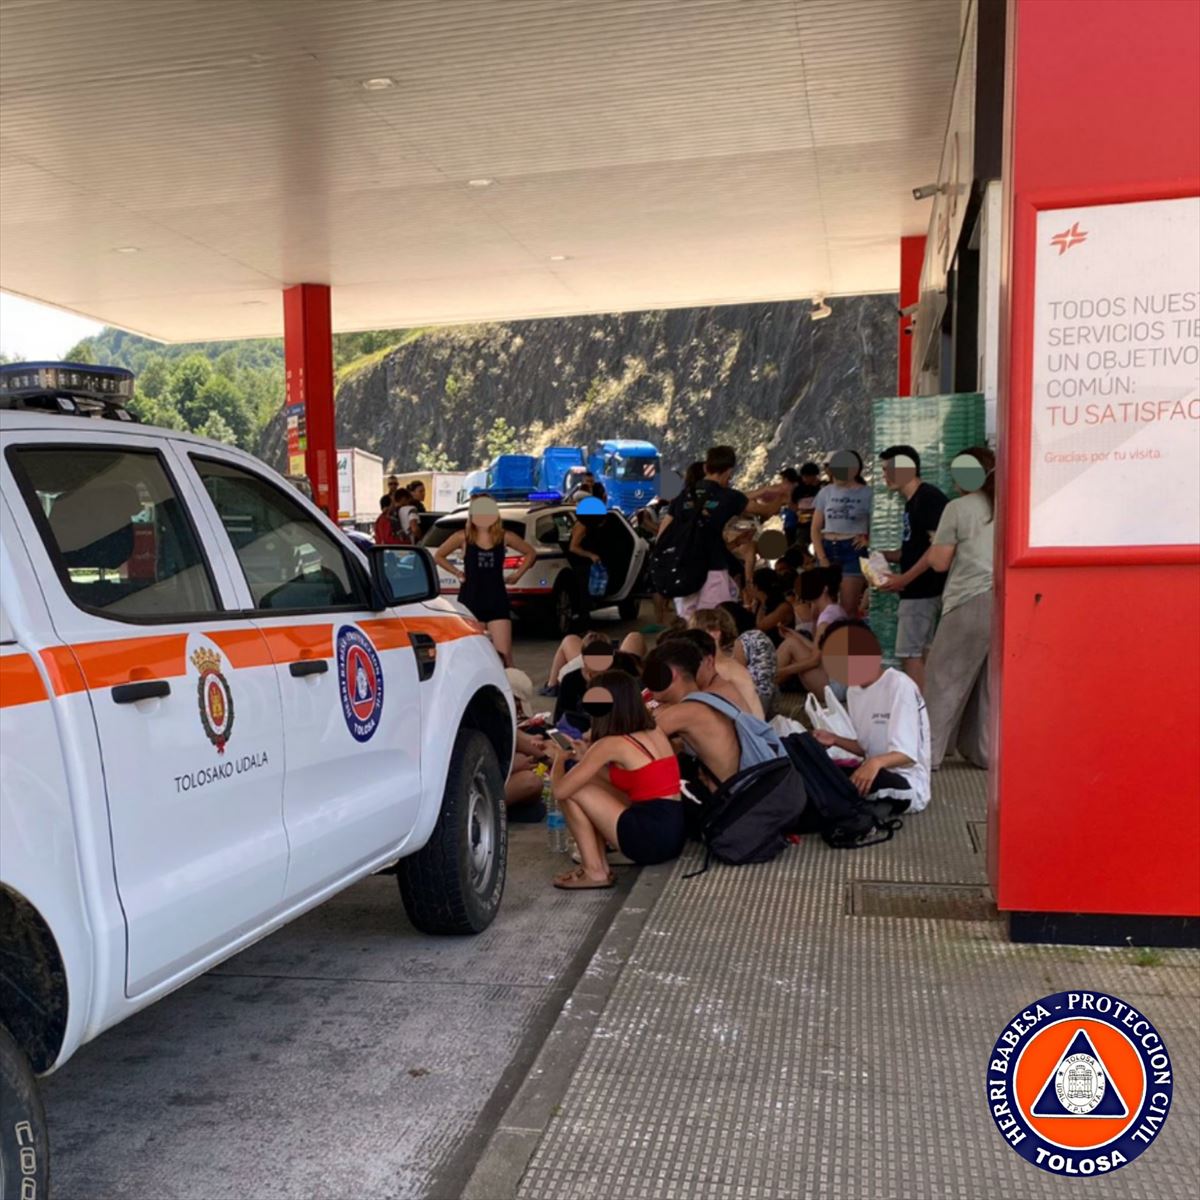 50 jóvenes han sido evacuados de un autobús averiado en Villabona. Foto: Protección Civil de Tolosa